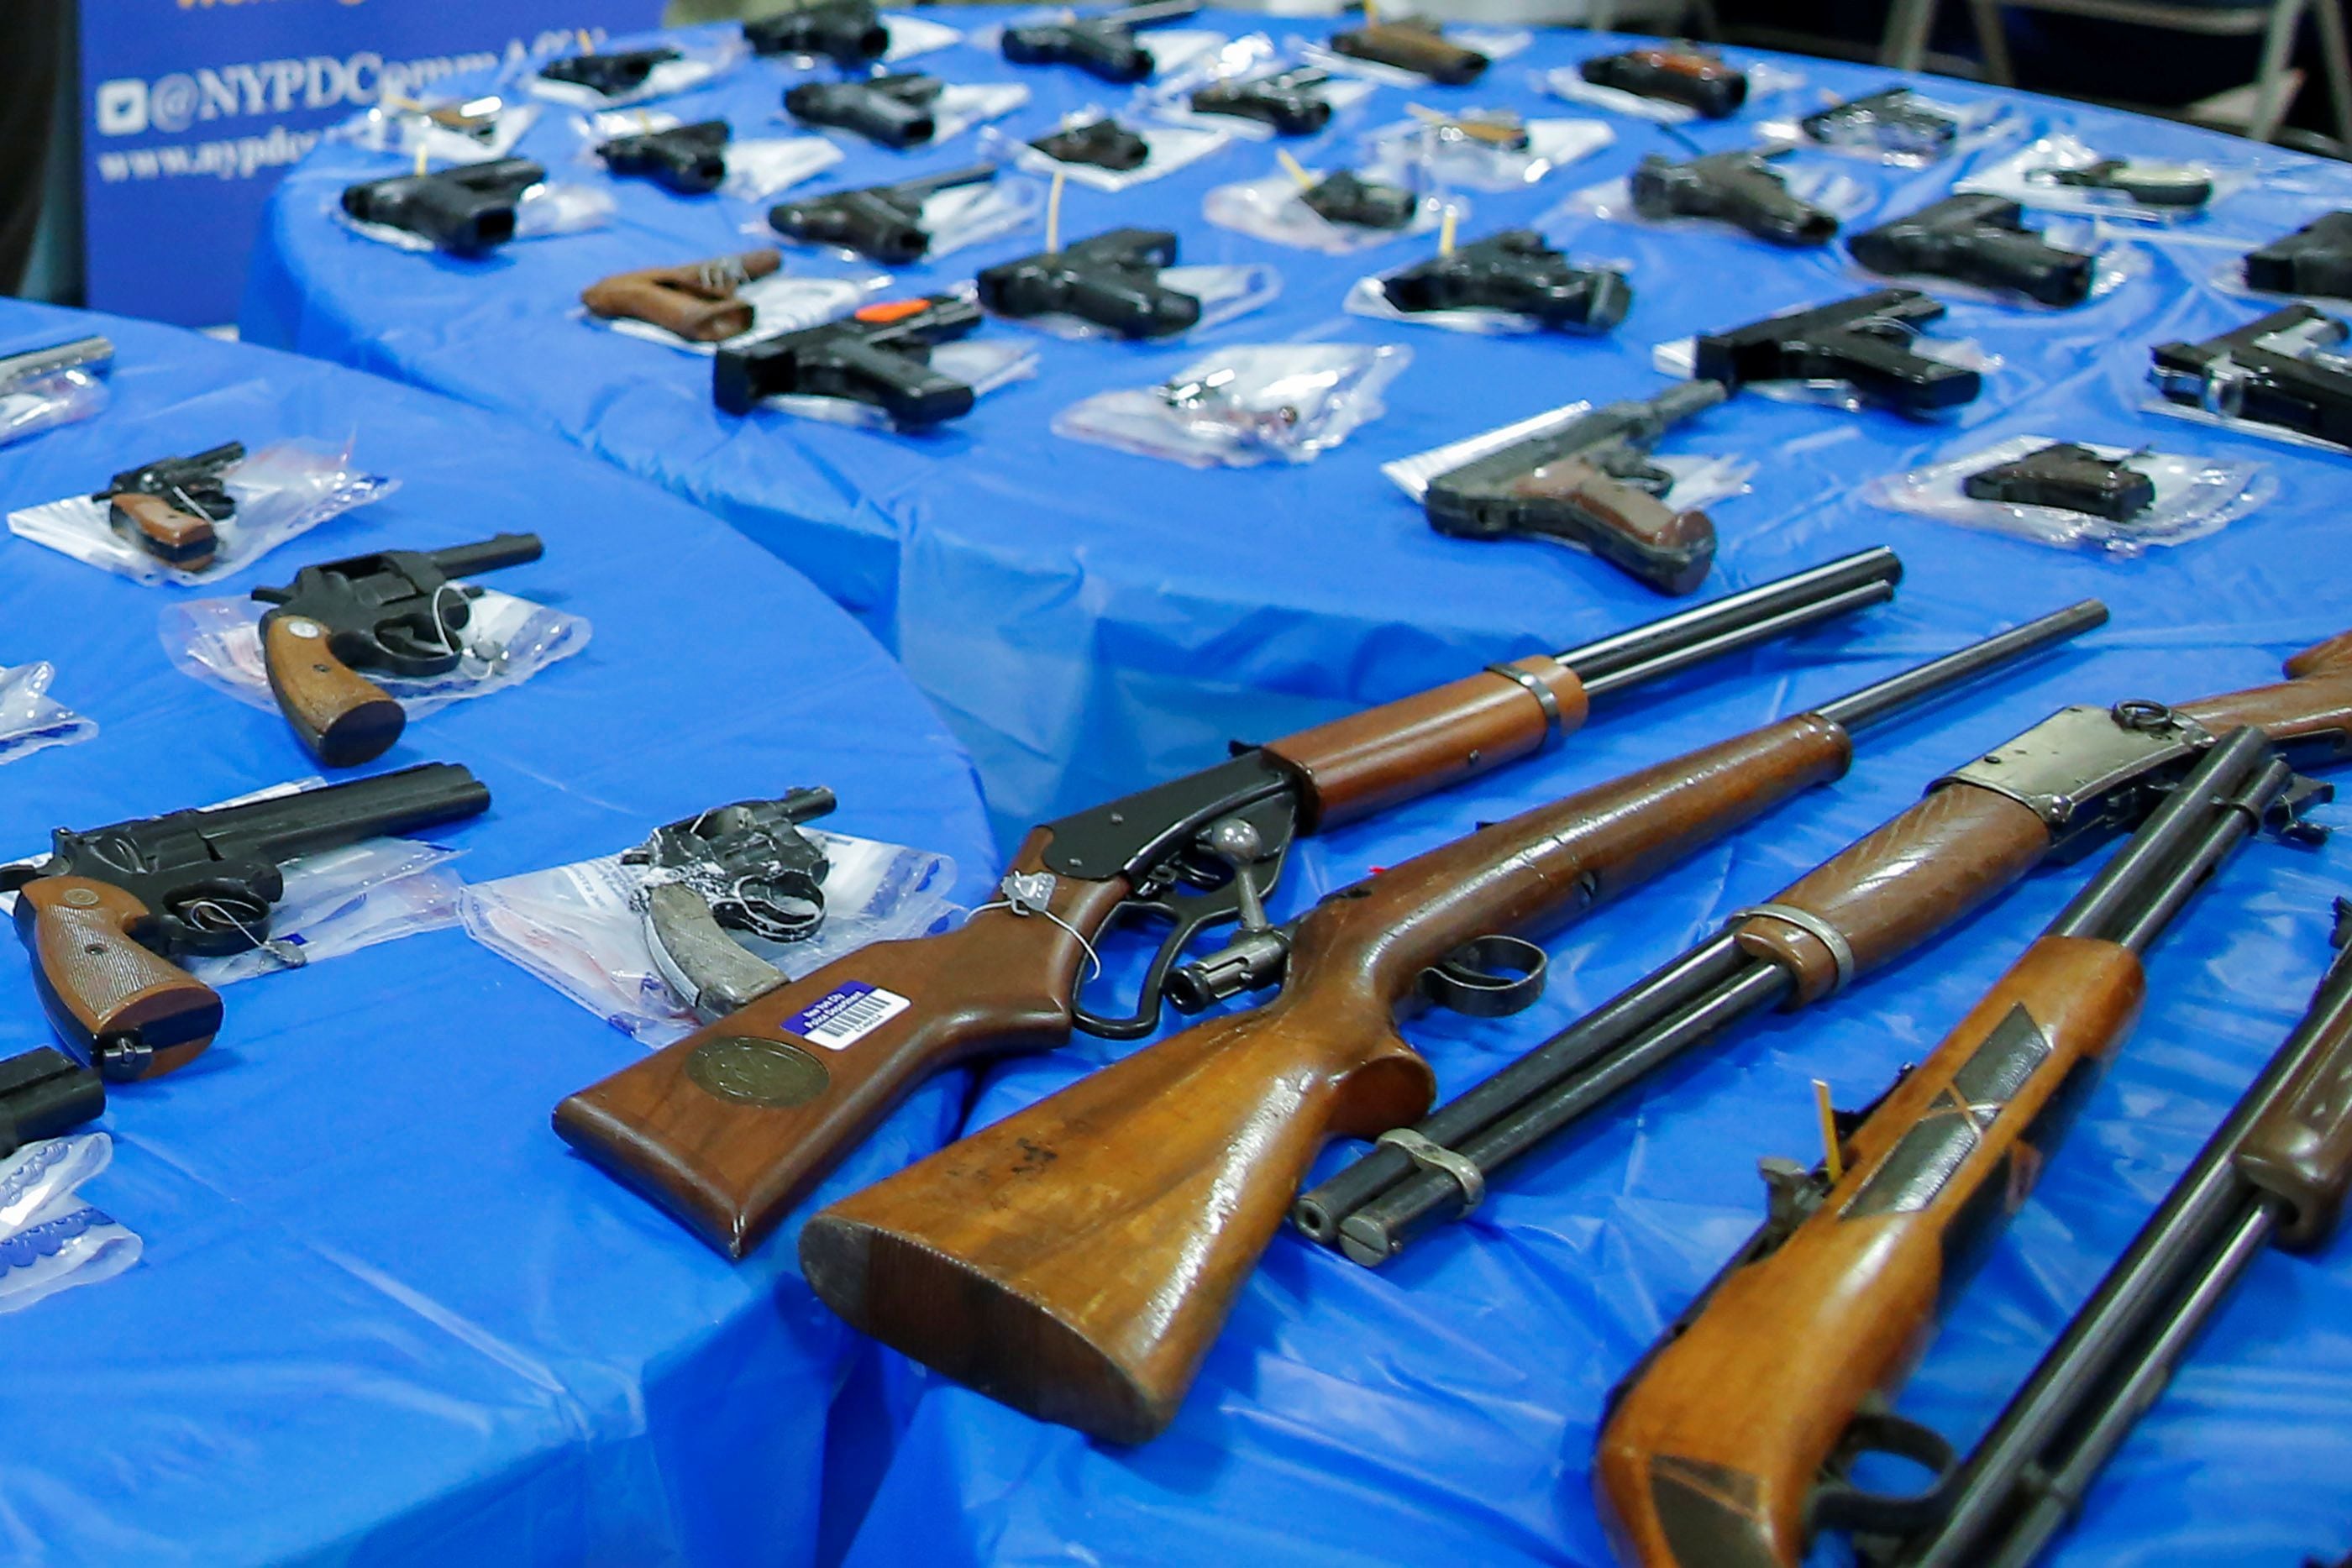 Armas mostradas después de un evento de recompra de armas organizado por el Departamento de Policía de la Ciudad de Nueva York (NYPD), en el barrio de Queens de la ciudad de Nueva York, Estados Unidos, 12 de junio de 2021. REUTERS/Eduardo Munoz